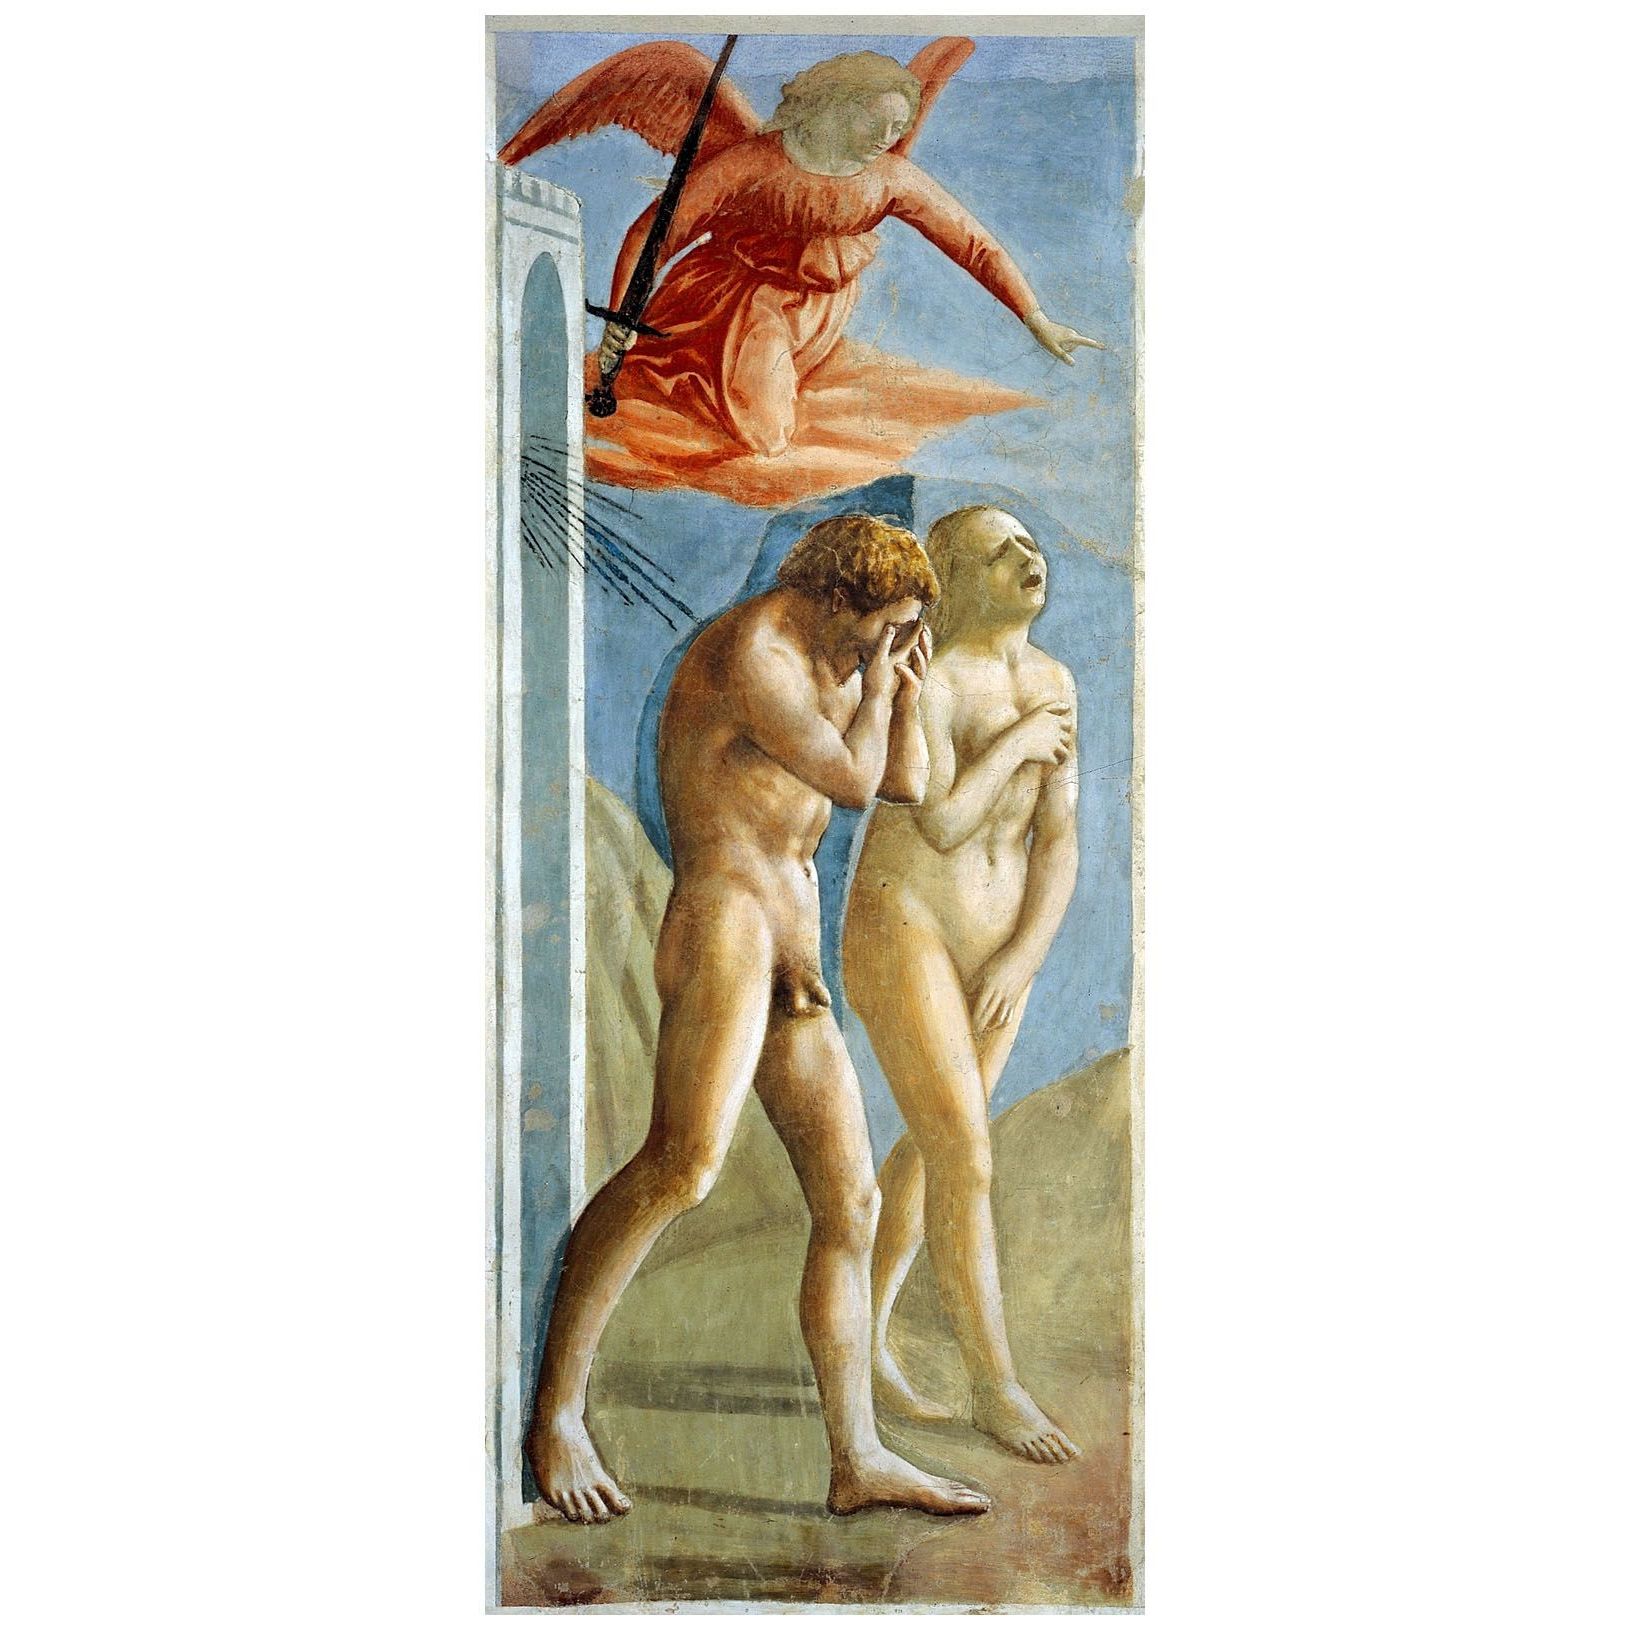 Мазаччо. Изгнание из рая. 1427. Капелла Бранкаччи, Флоренция